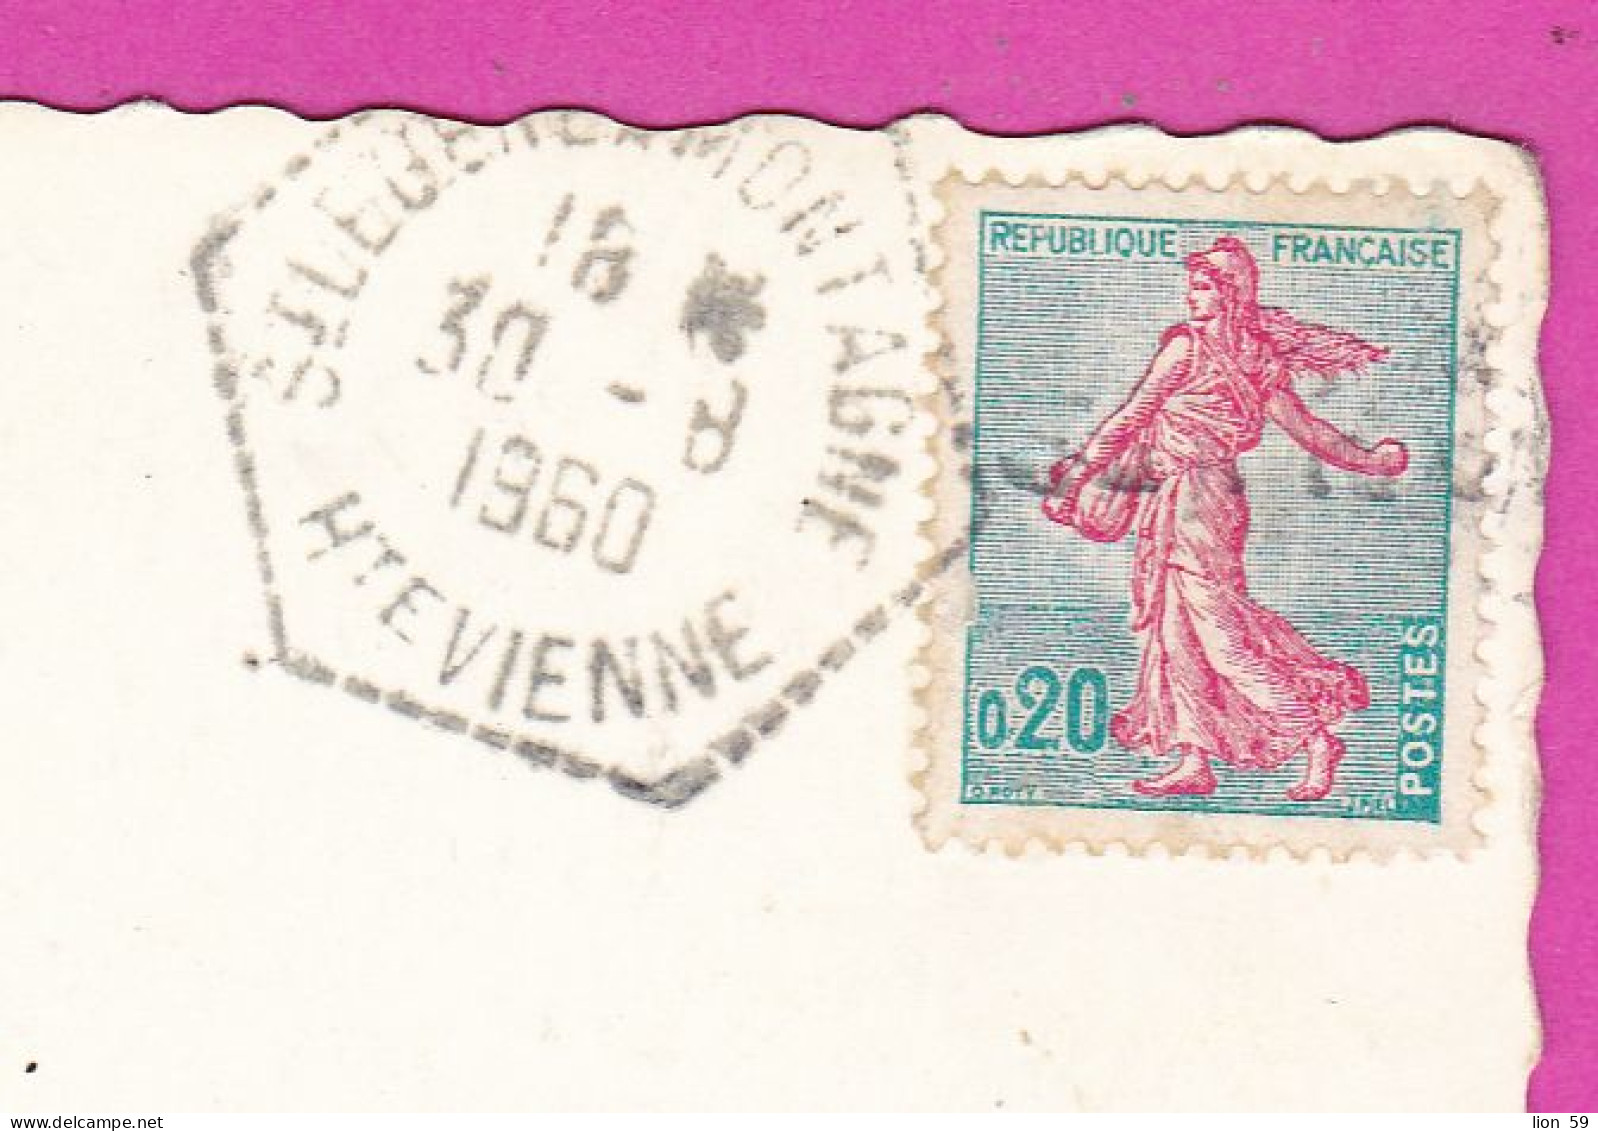 294120 / France - UZERCHE (Correze) La Perle Du Limousin Vue Generale PC 1960 USED 0.20 Fr. Semeuse Turquoise Et Rose - Lettres & Documents